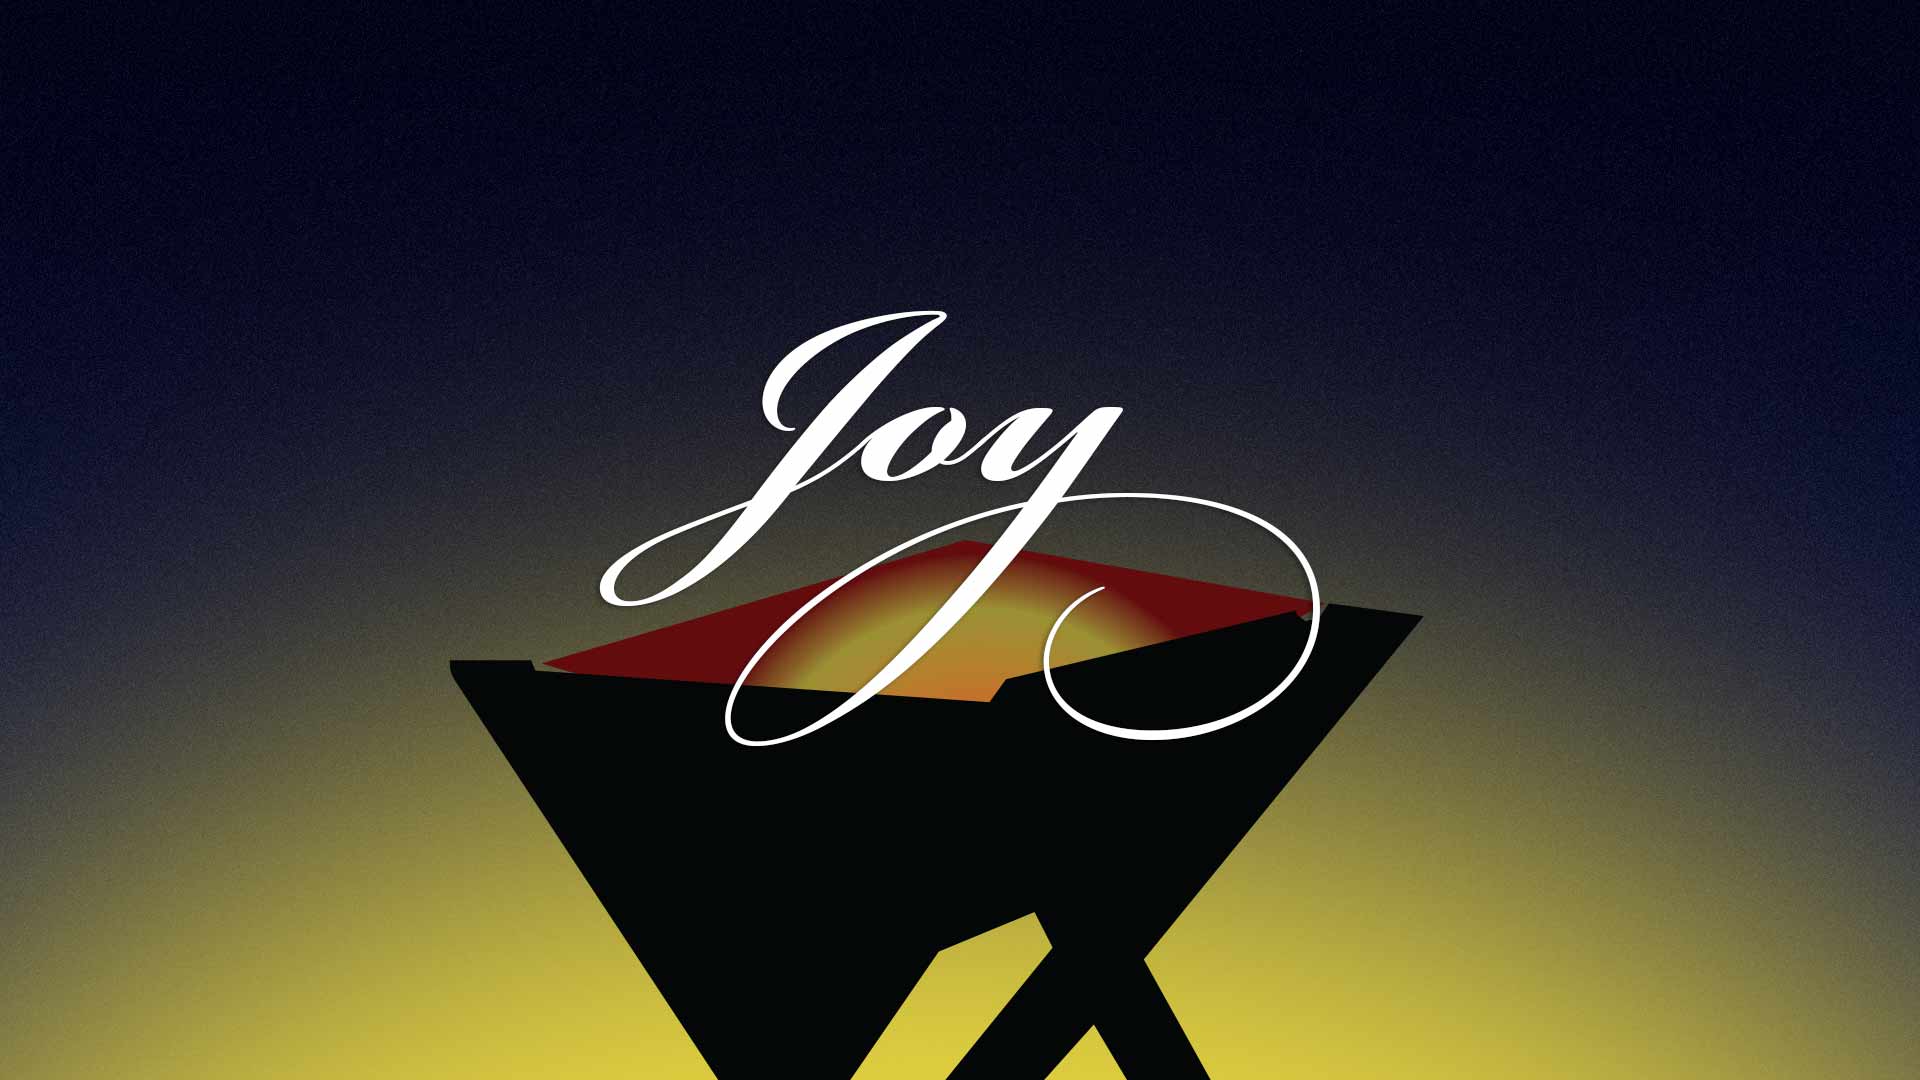 Joy in uncertain times